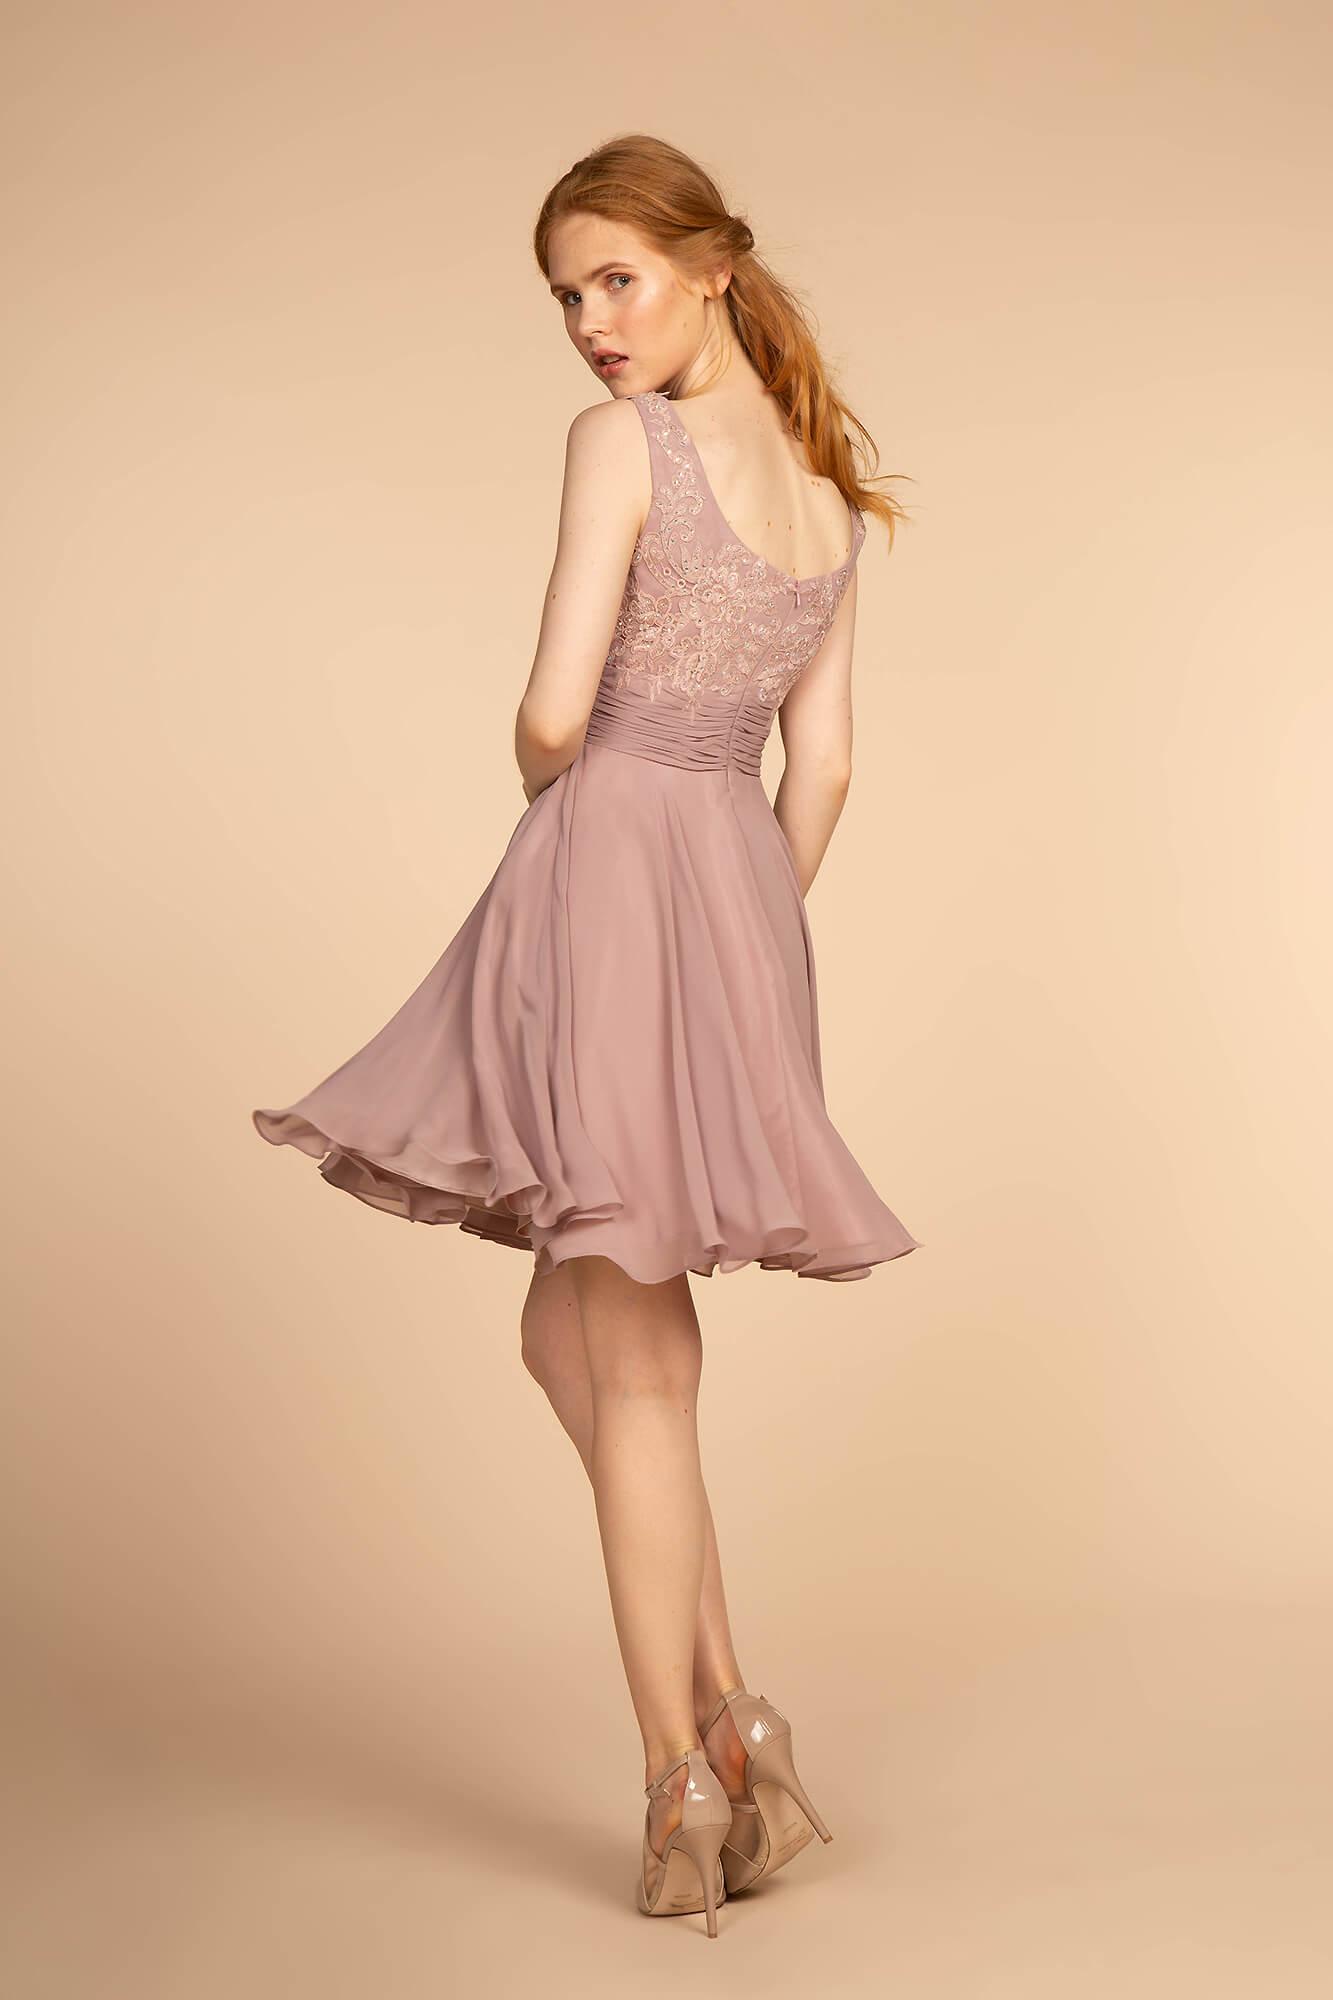 Homecoming Prom Short Dress Formal - The Dress Outlet Elizabeth K